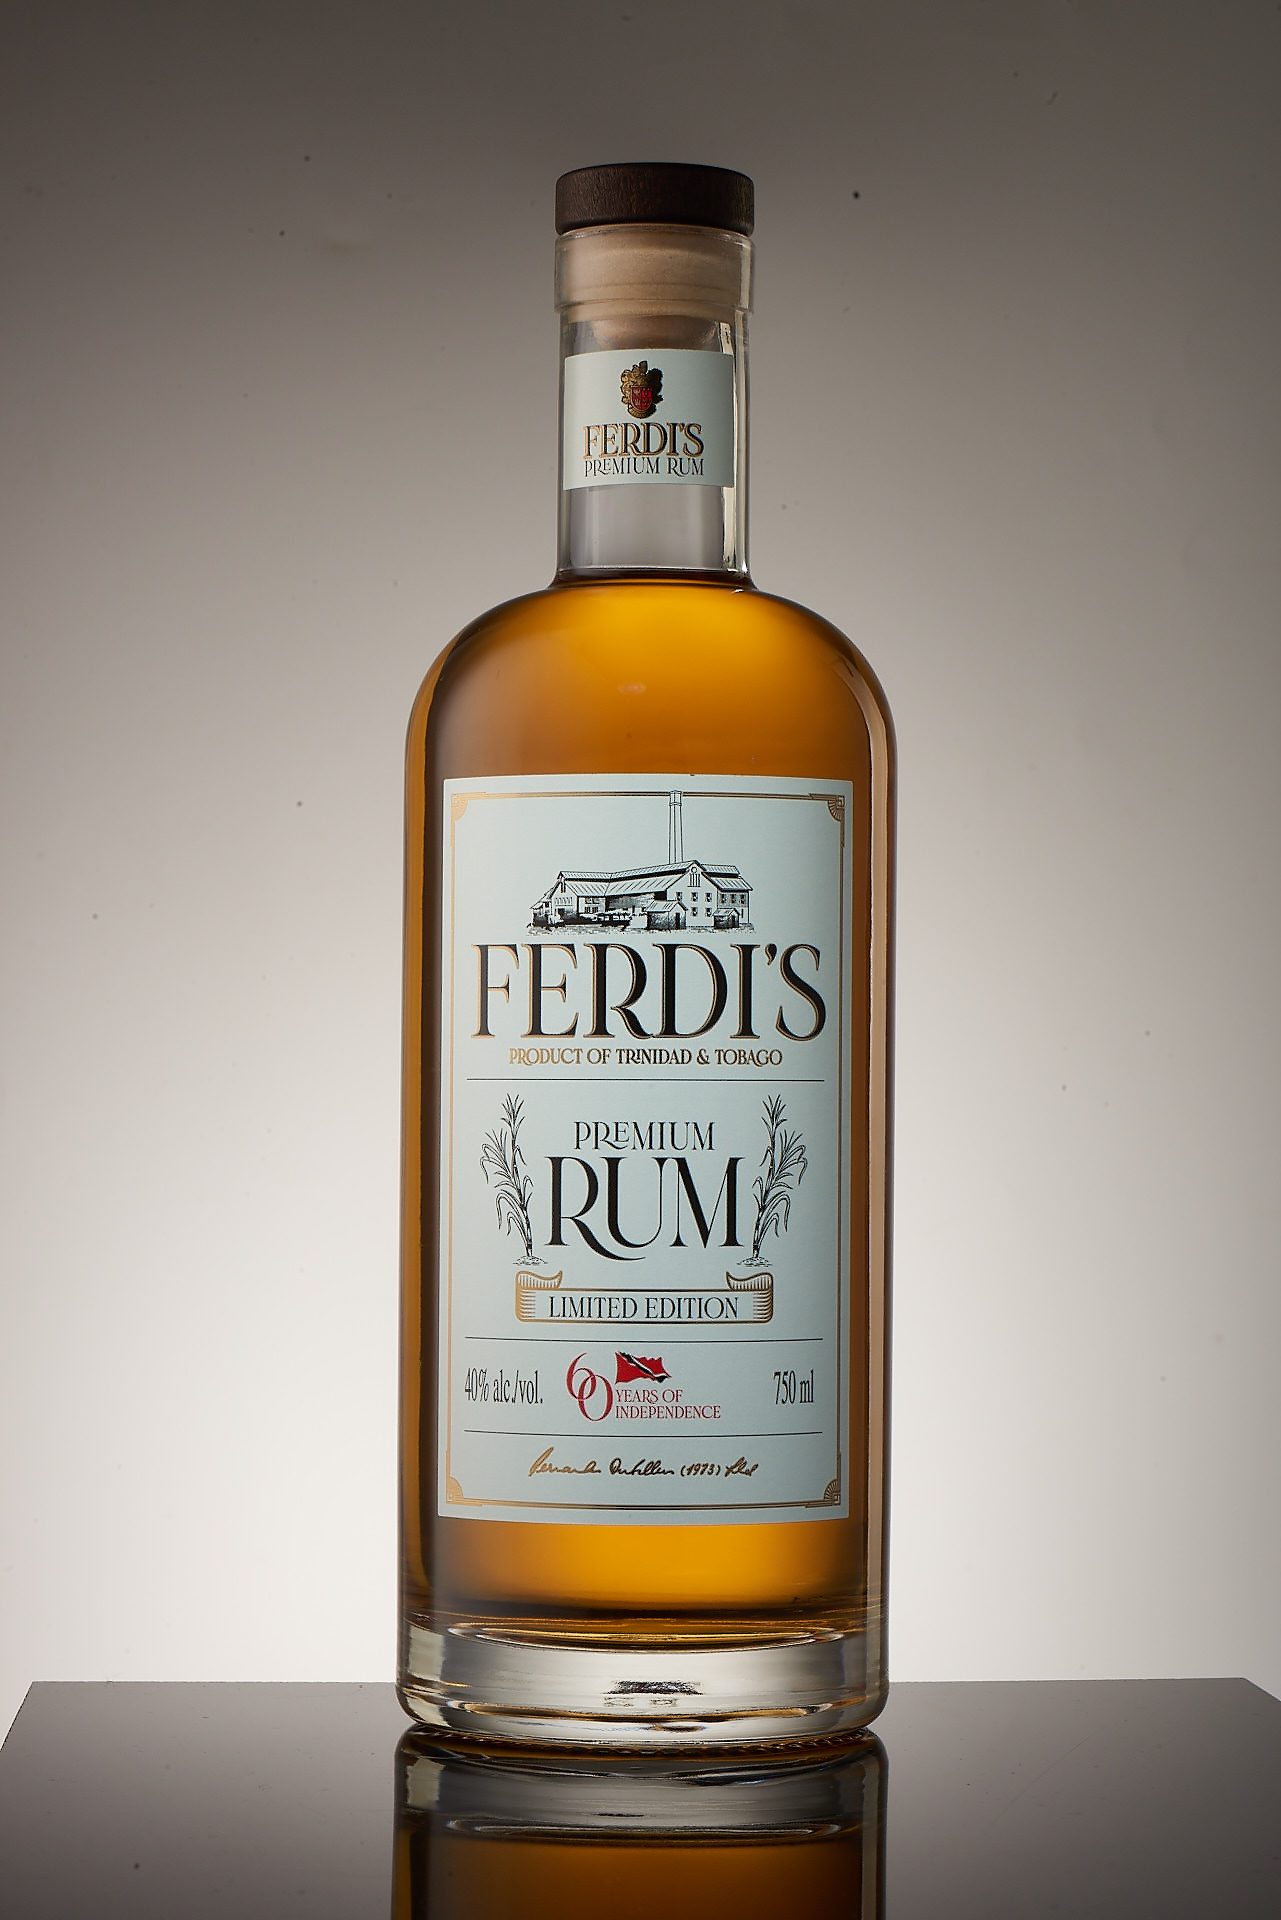 Ferdi’s Limited Edition Premium Rum